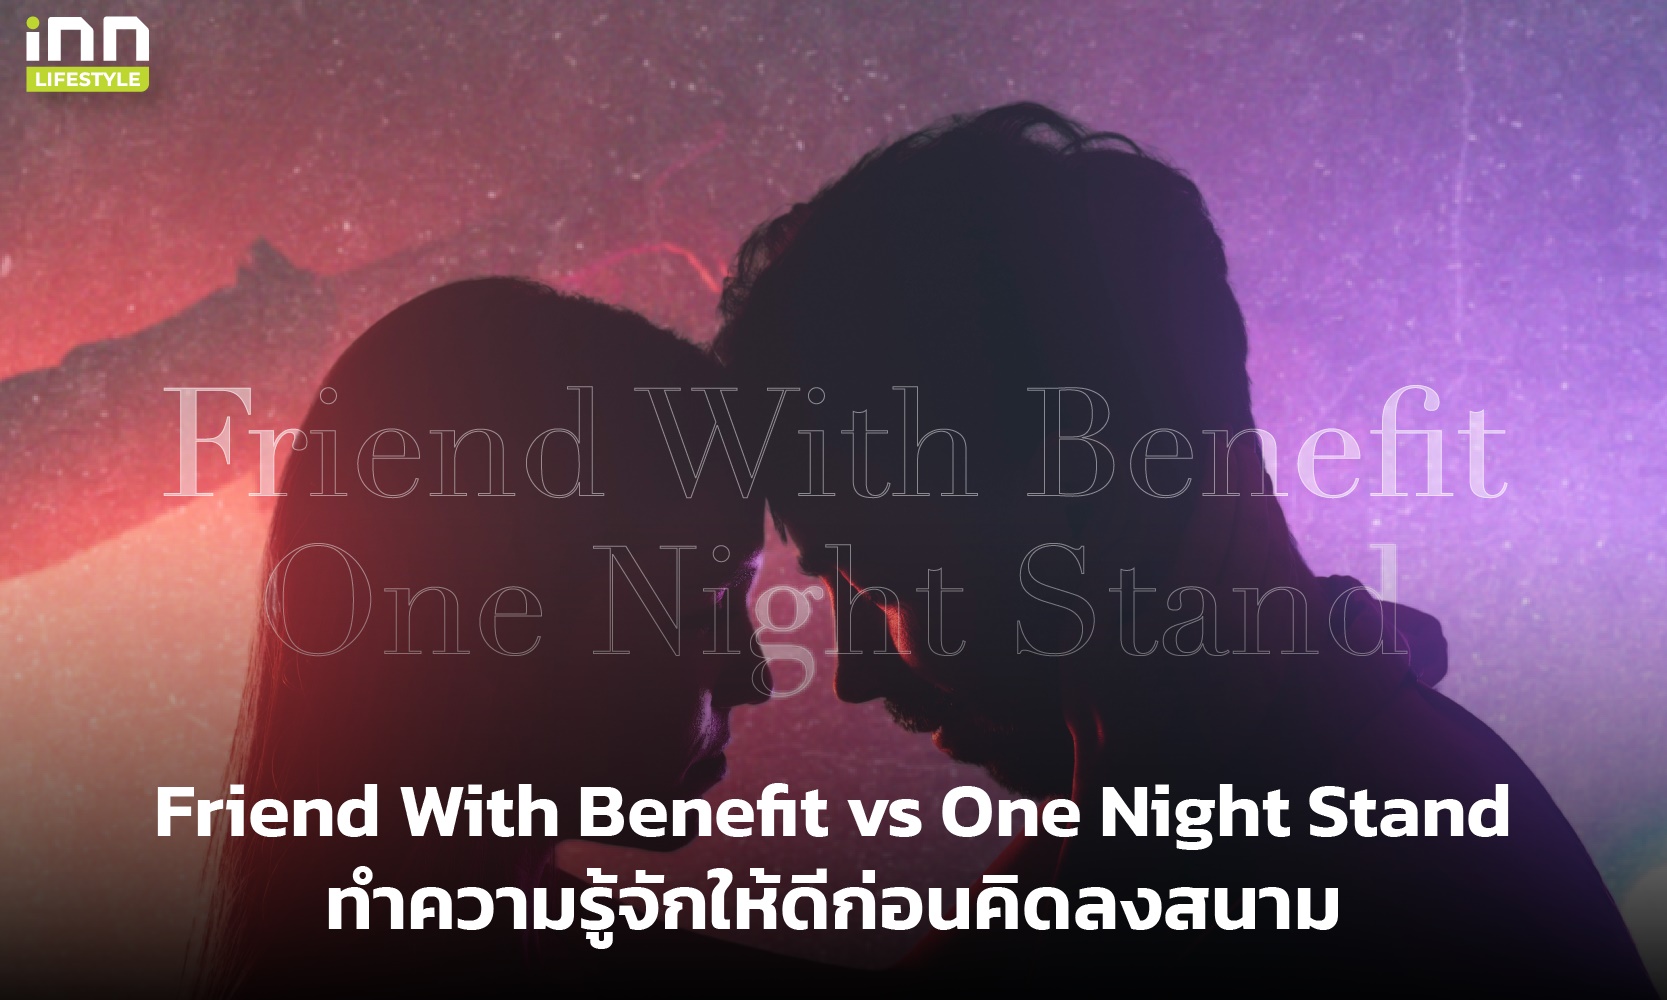 Friend With Benefit vs One Night Stand ทำความรู้จักให้ดีก่อนคิดลงสนาม